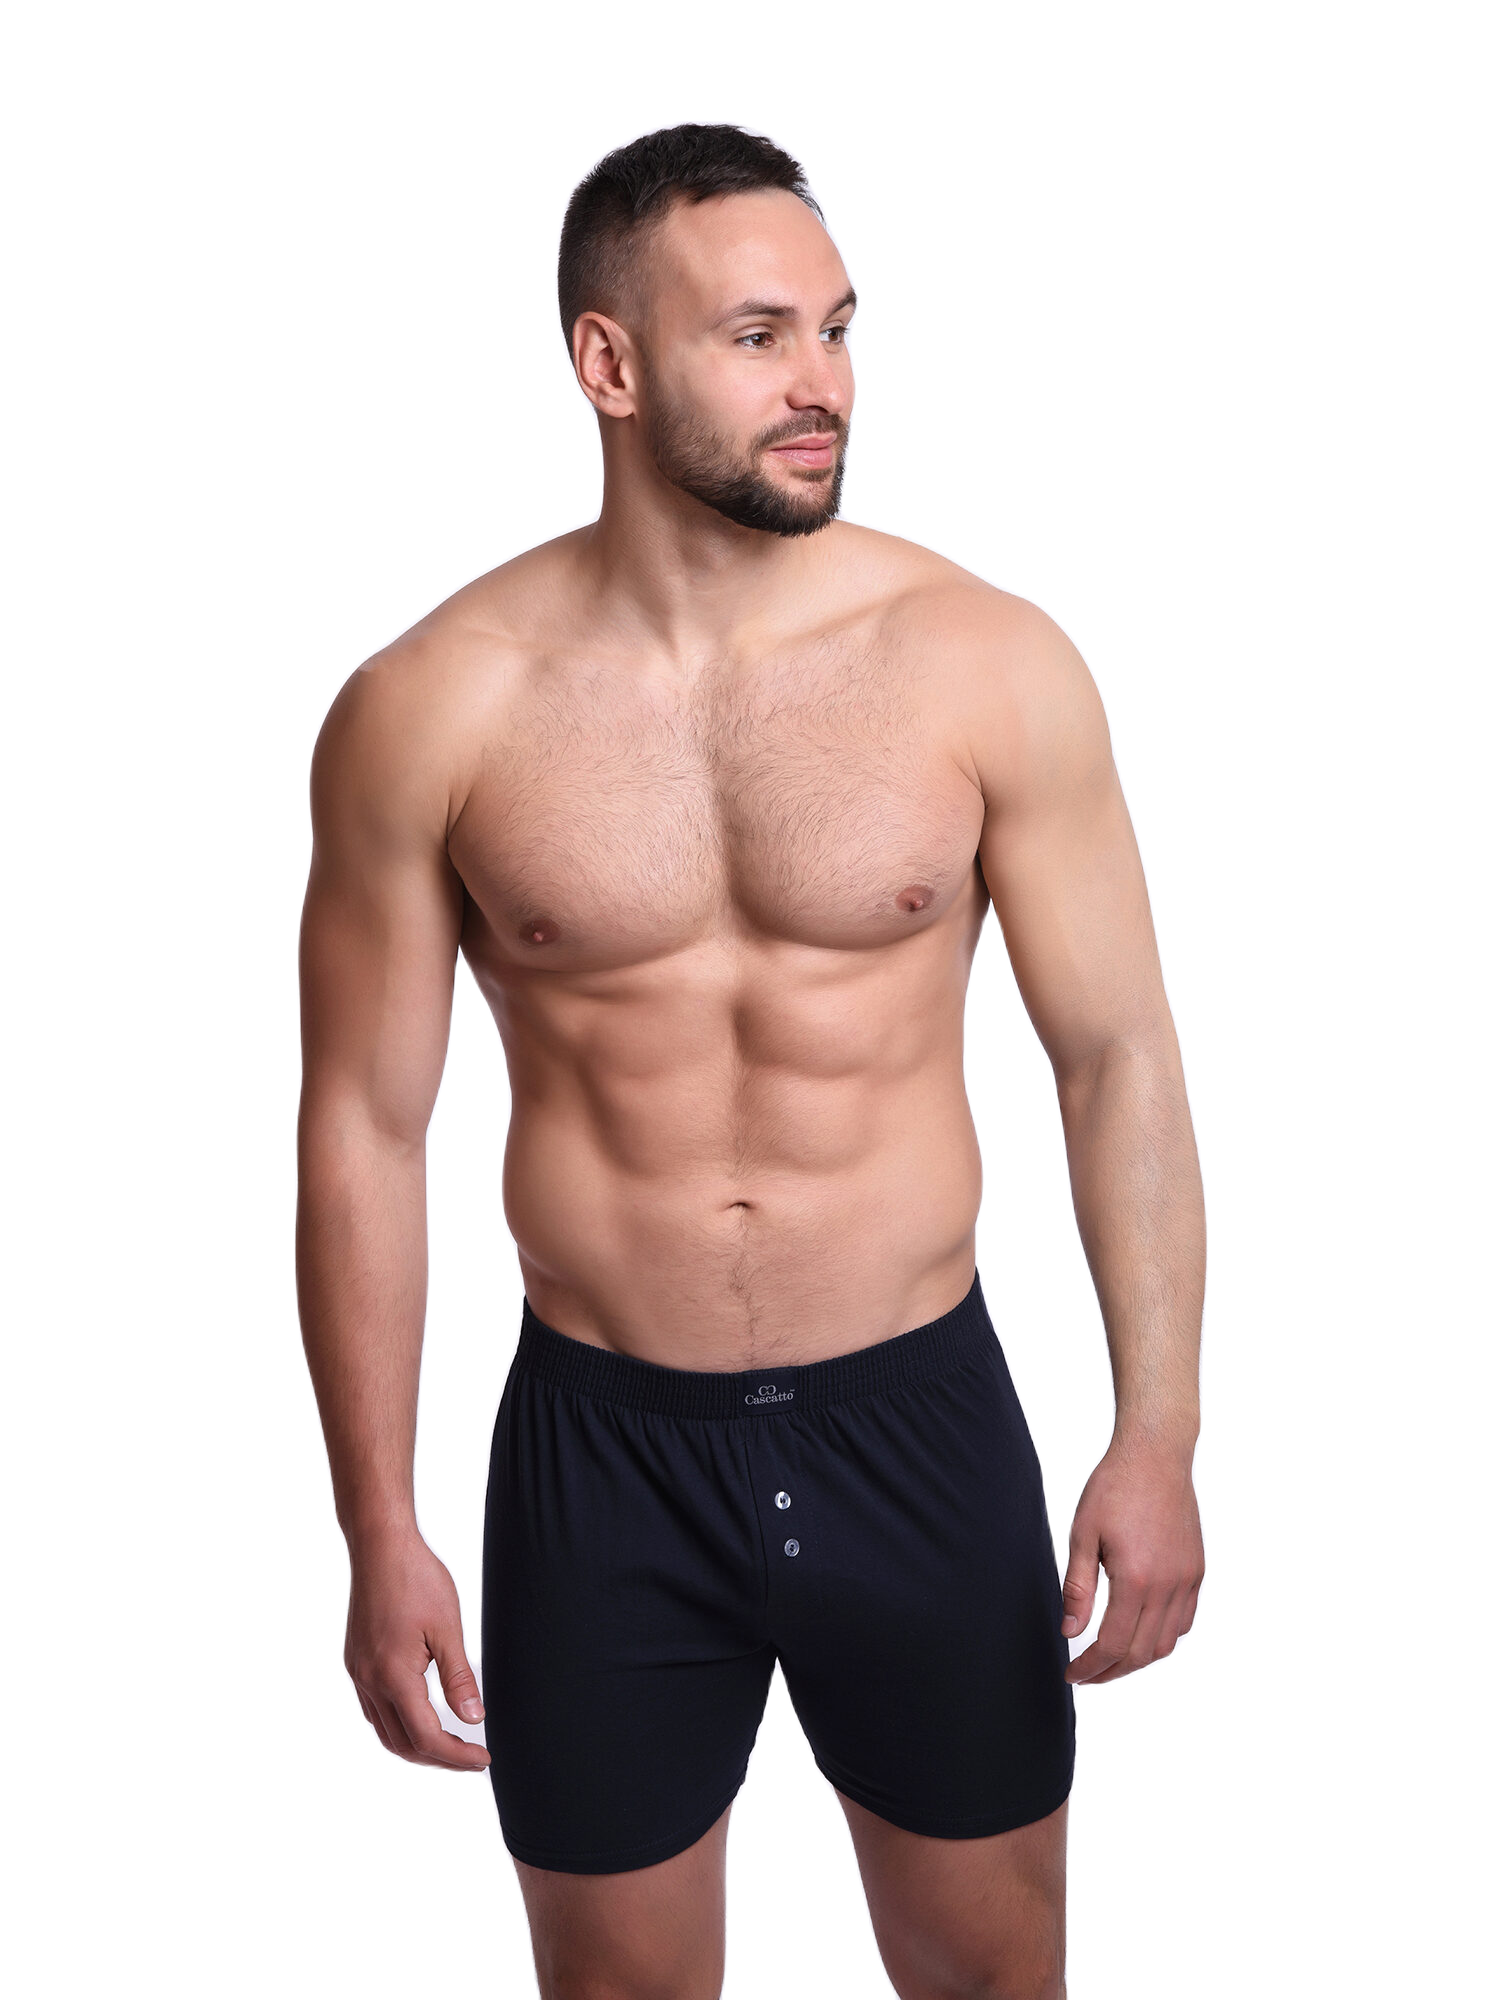 Трусы Cascatto шорты для мужчин, маренго, размер L, MSH1803